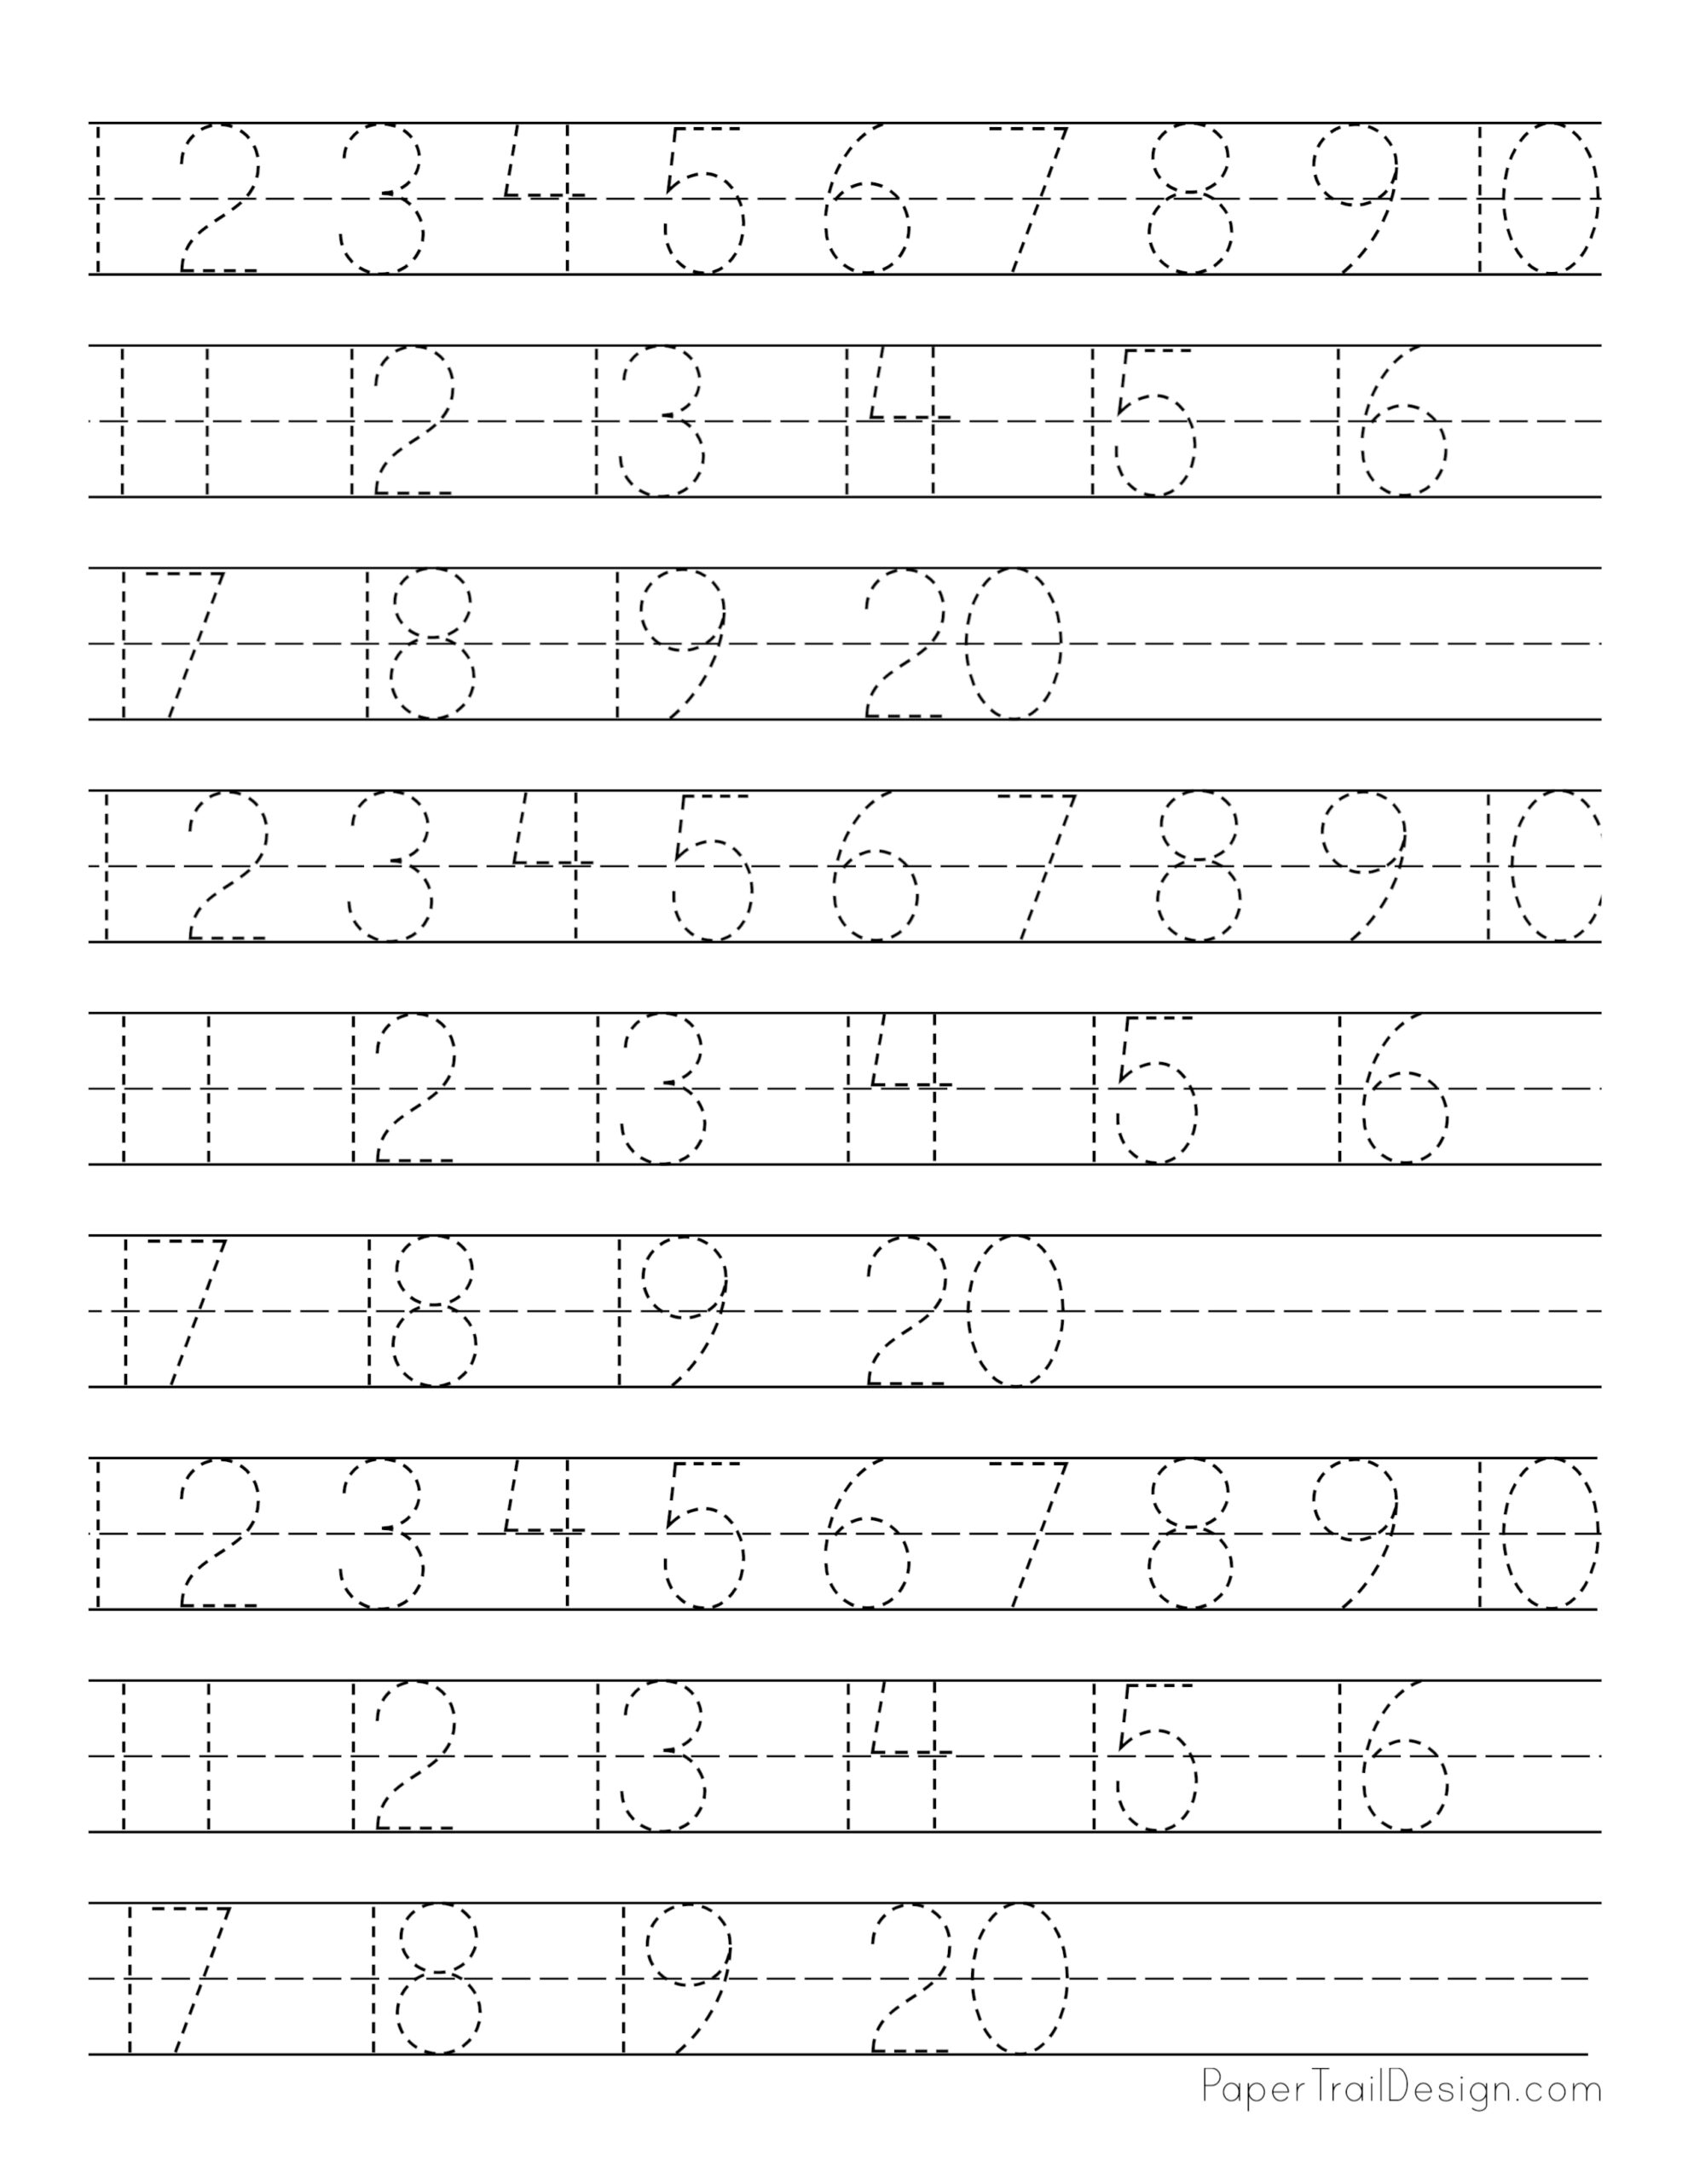 number-tracing-1-10-worksheet-6da